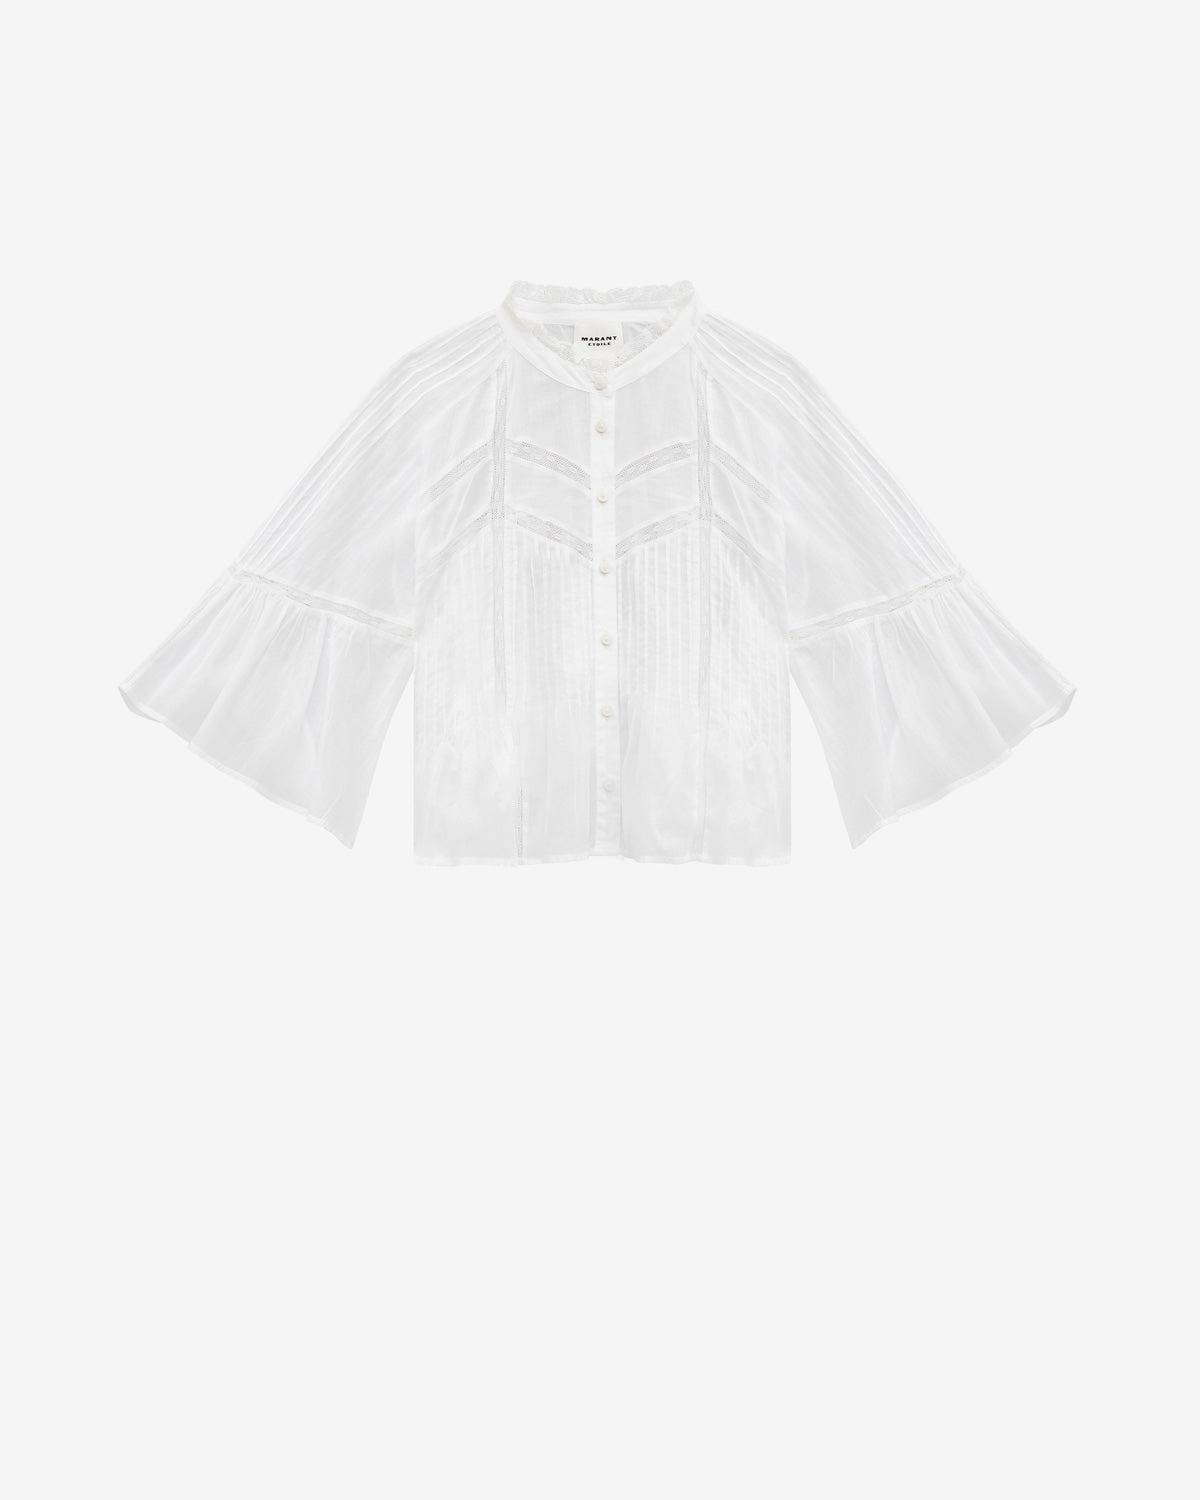 Gramy blouse Woman White 1